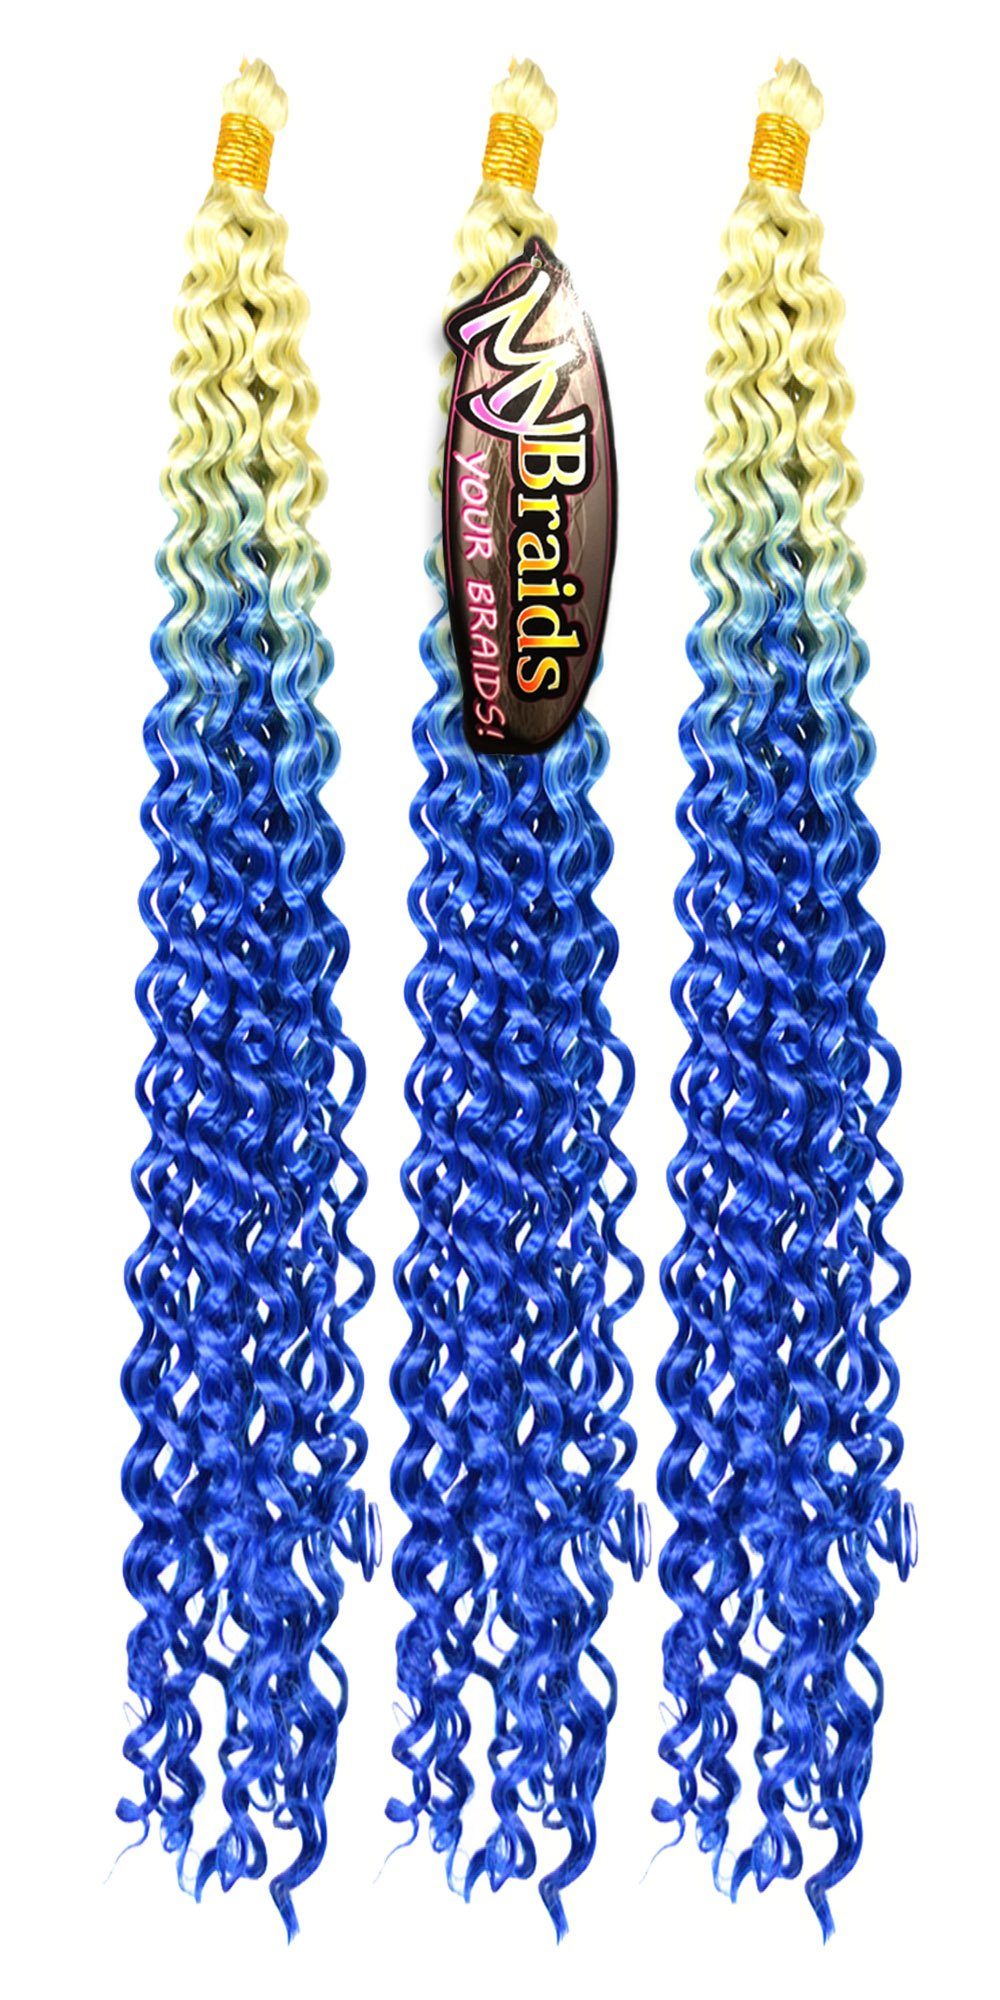 MyBraids YOUR BRAIDS! Hellblond-Blau Deep Wellig Ombre Braids Pack Kunsthaar-Extension Crochet Wave 19-WS Flechthaar 3er Zöpfe